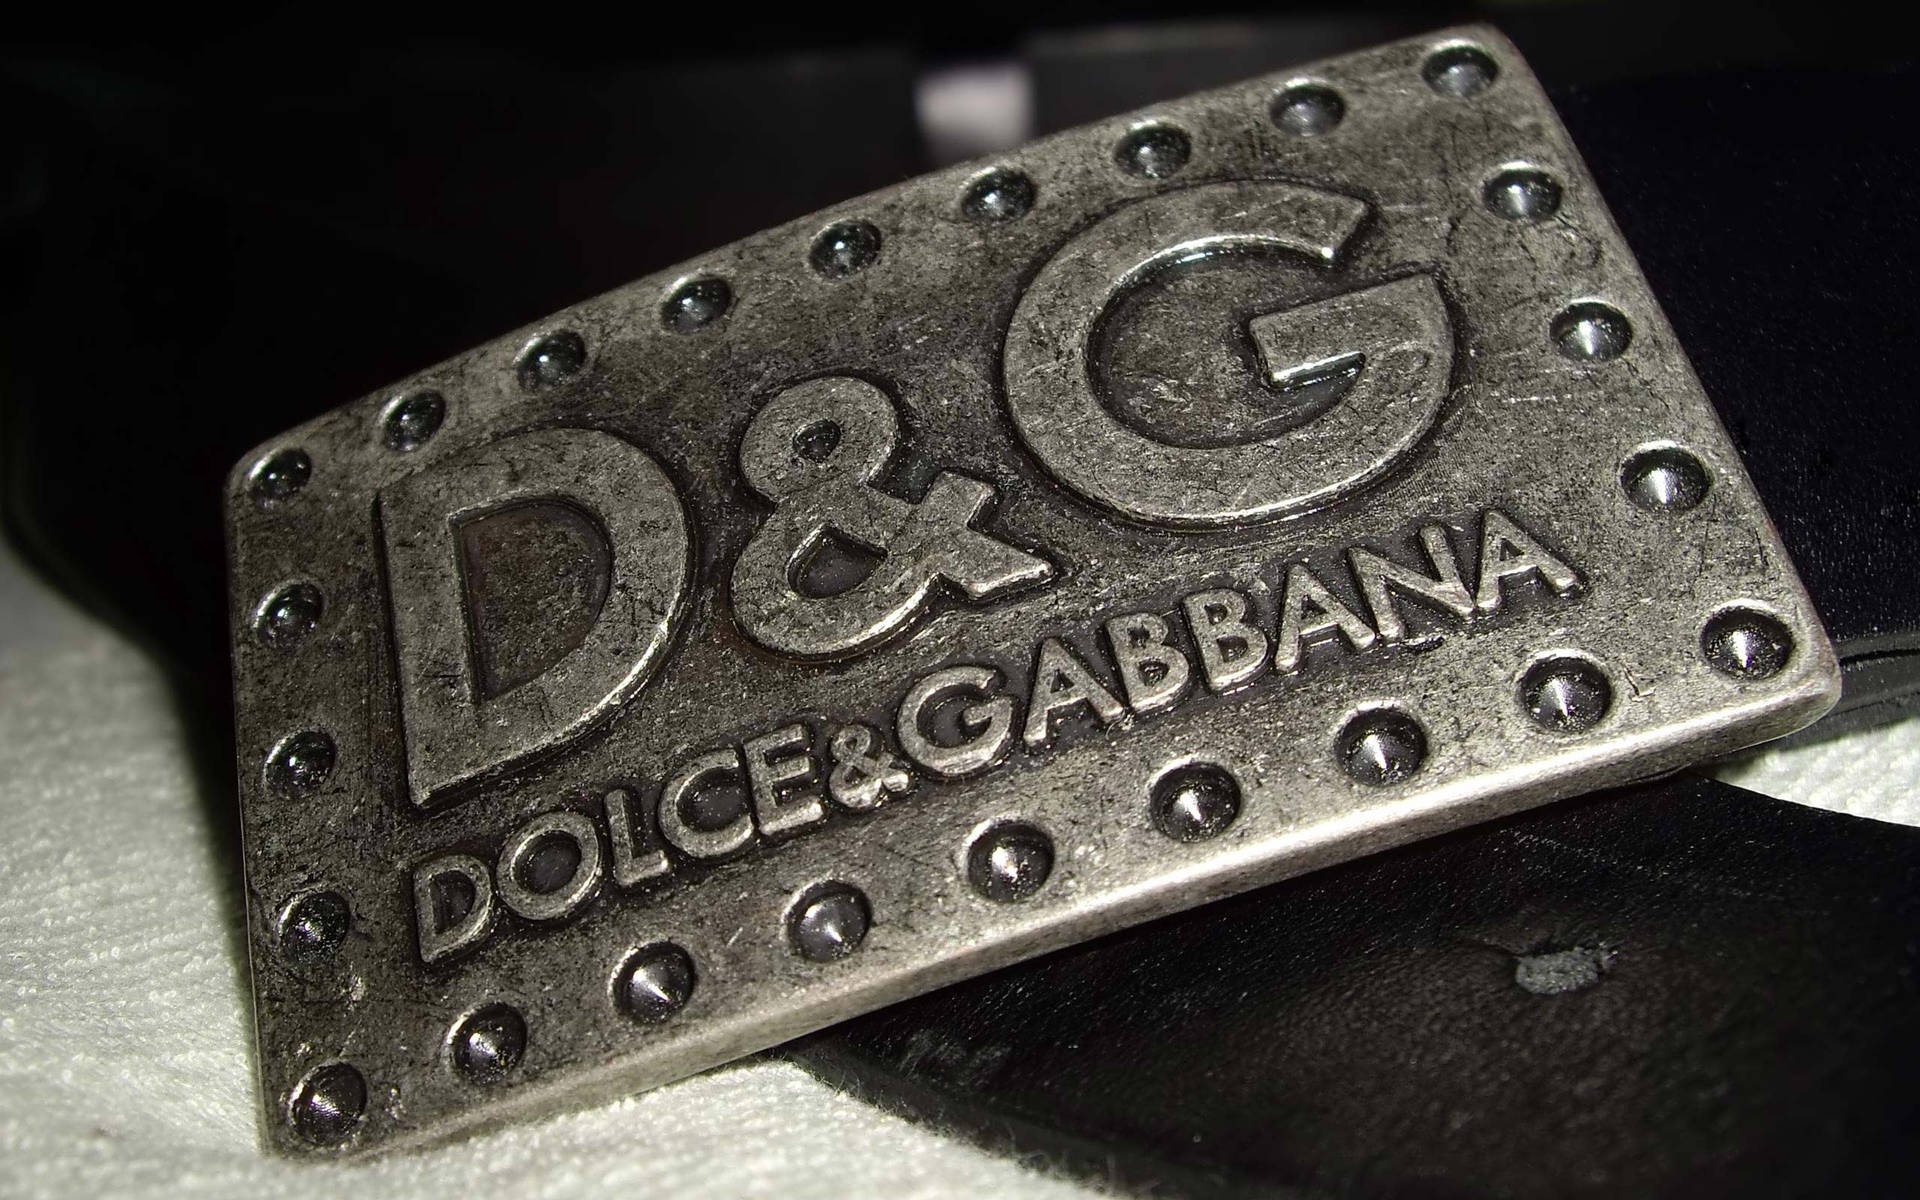 Dolce Og Gabbana 2560 X 1600 Wallpaper